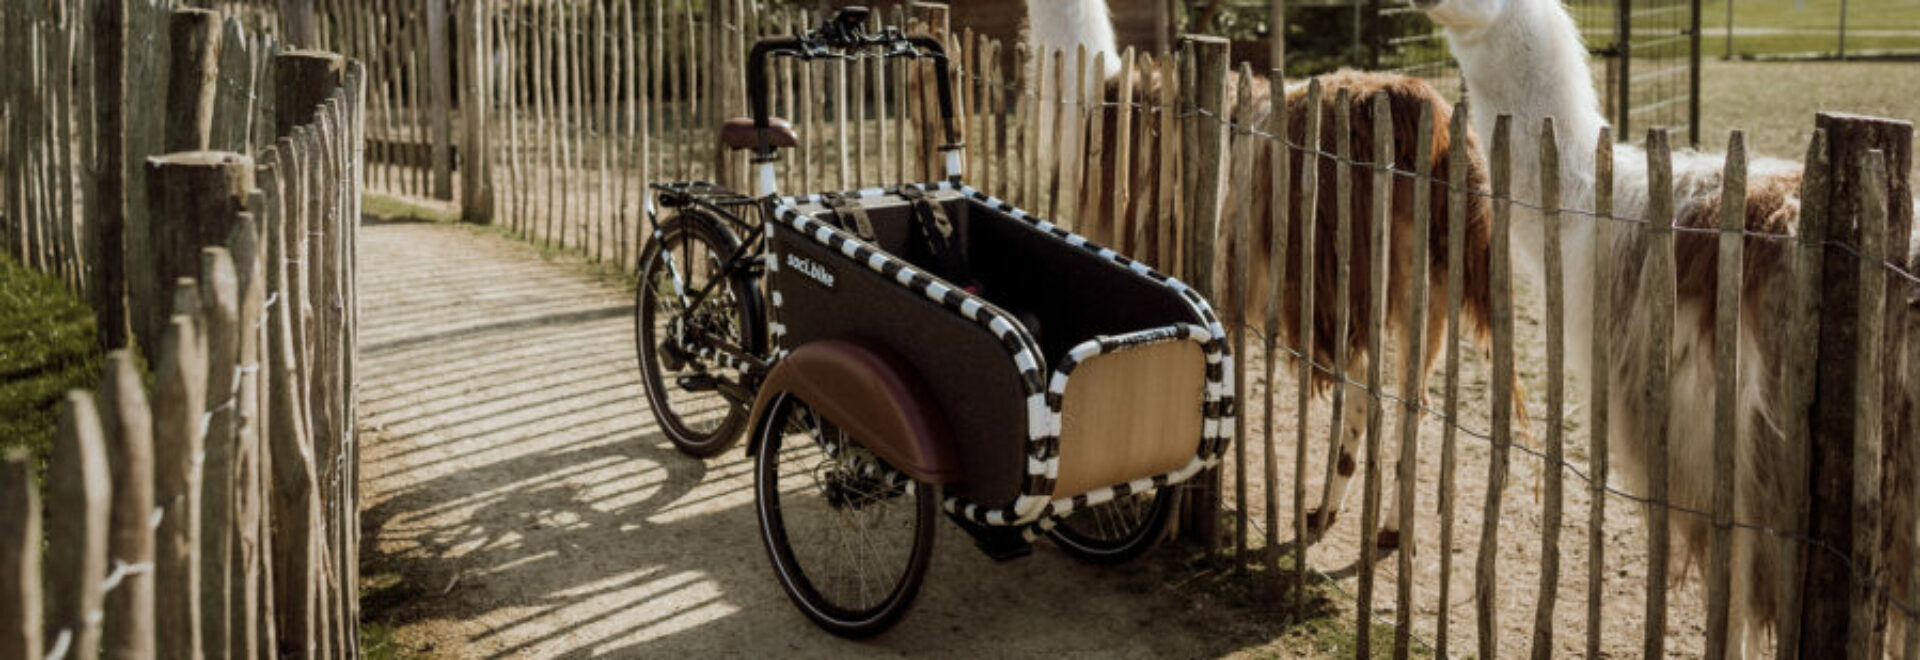 slider 10 - soci.bike kunstproject Frank Willems high res (8)